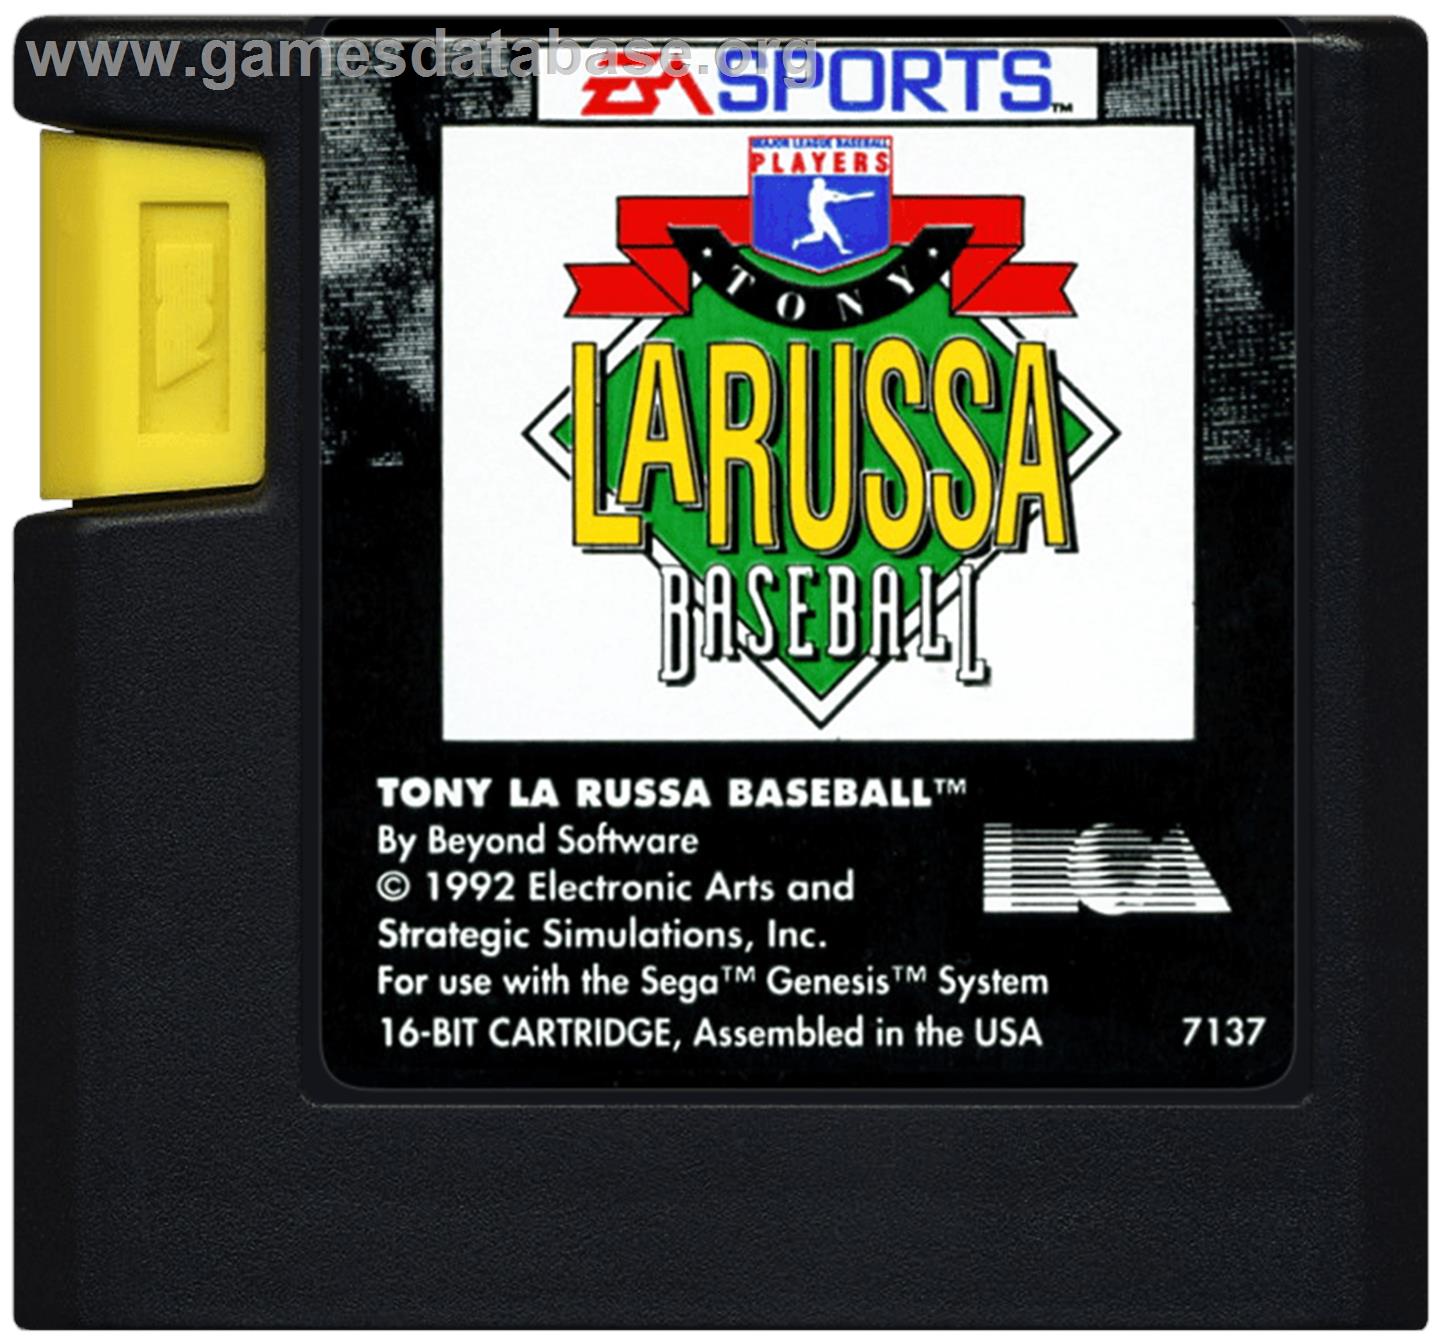 Tony La Russa Baseball - Sega Genesis - Artwork - Cartridge